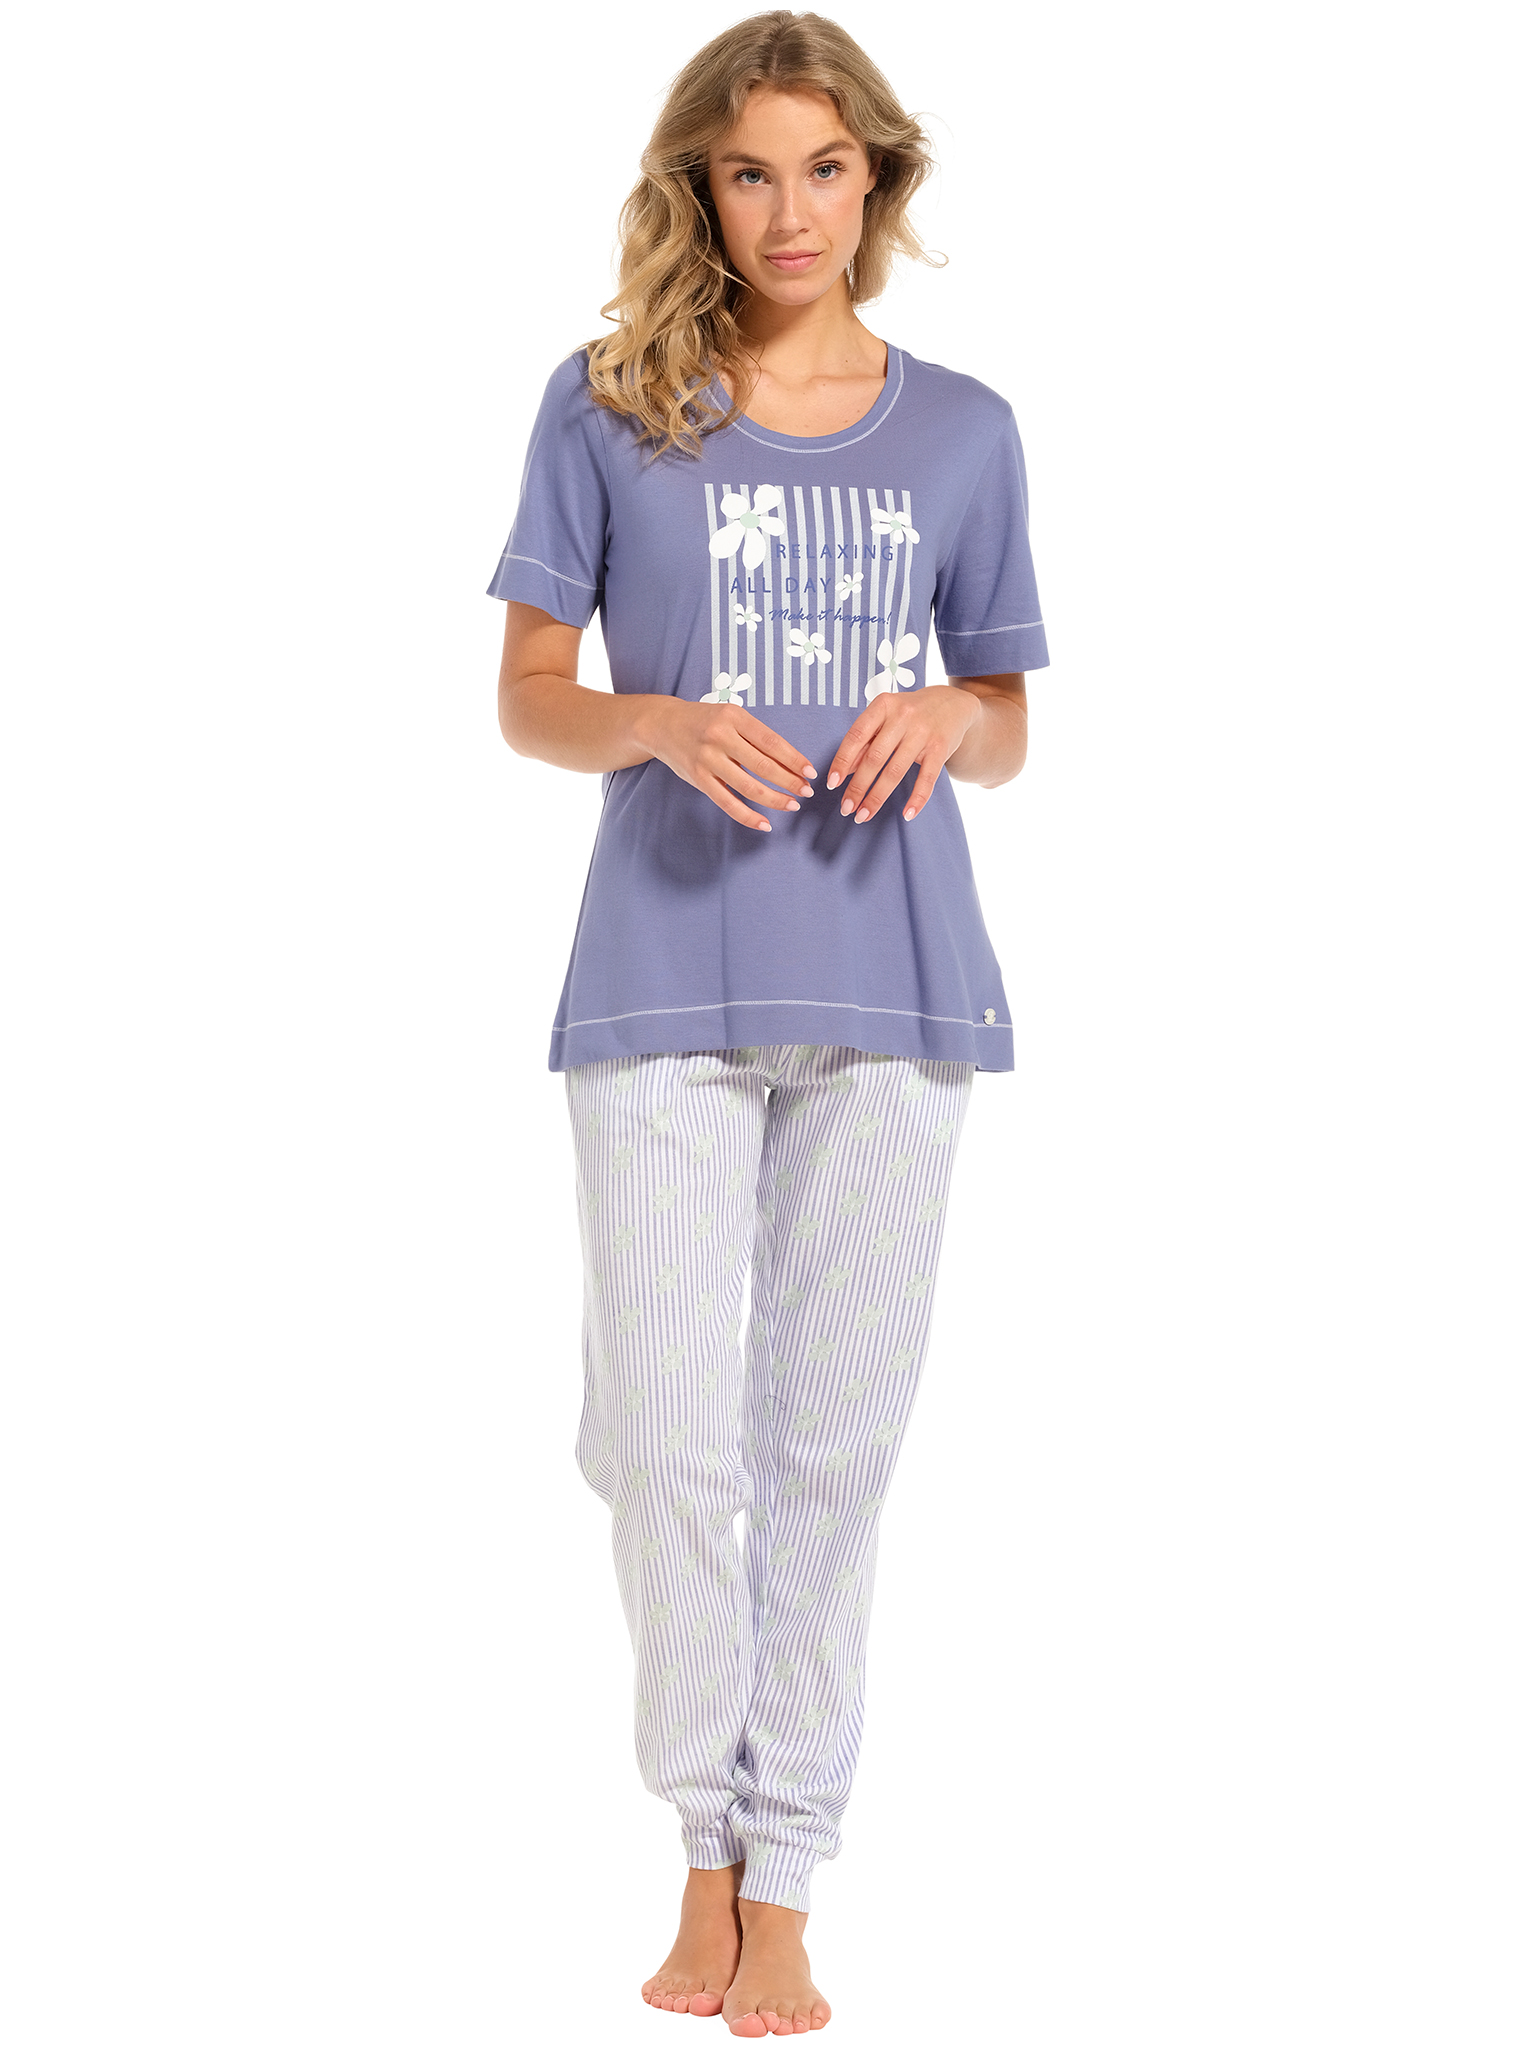 Pastunette - Flowerful - Dames Pyjamaset - Blauw - Organisch Katoen - Maat 40